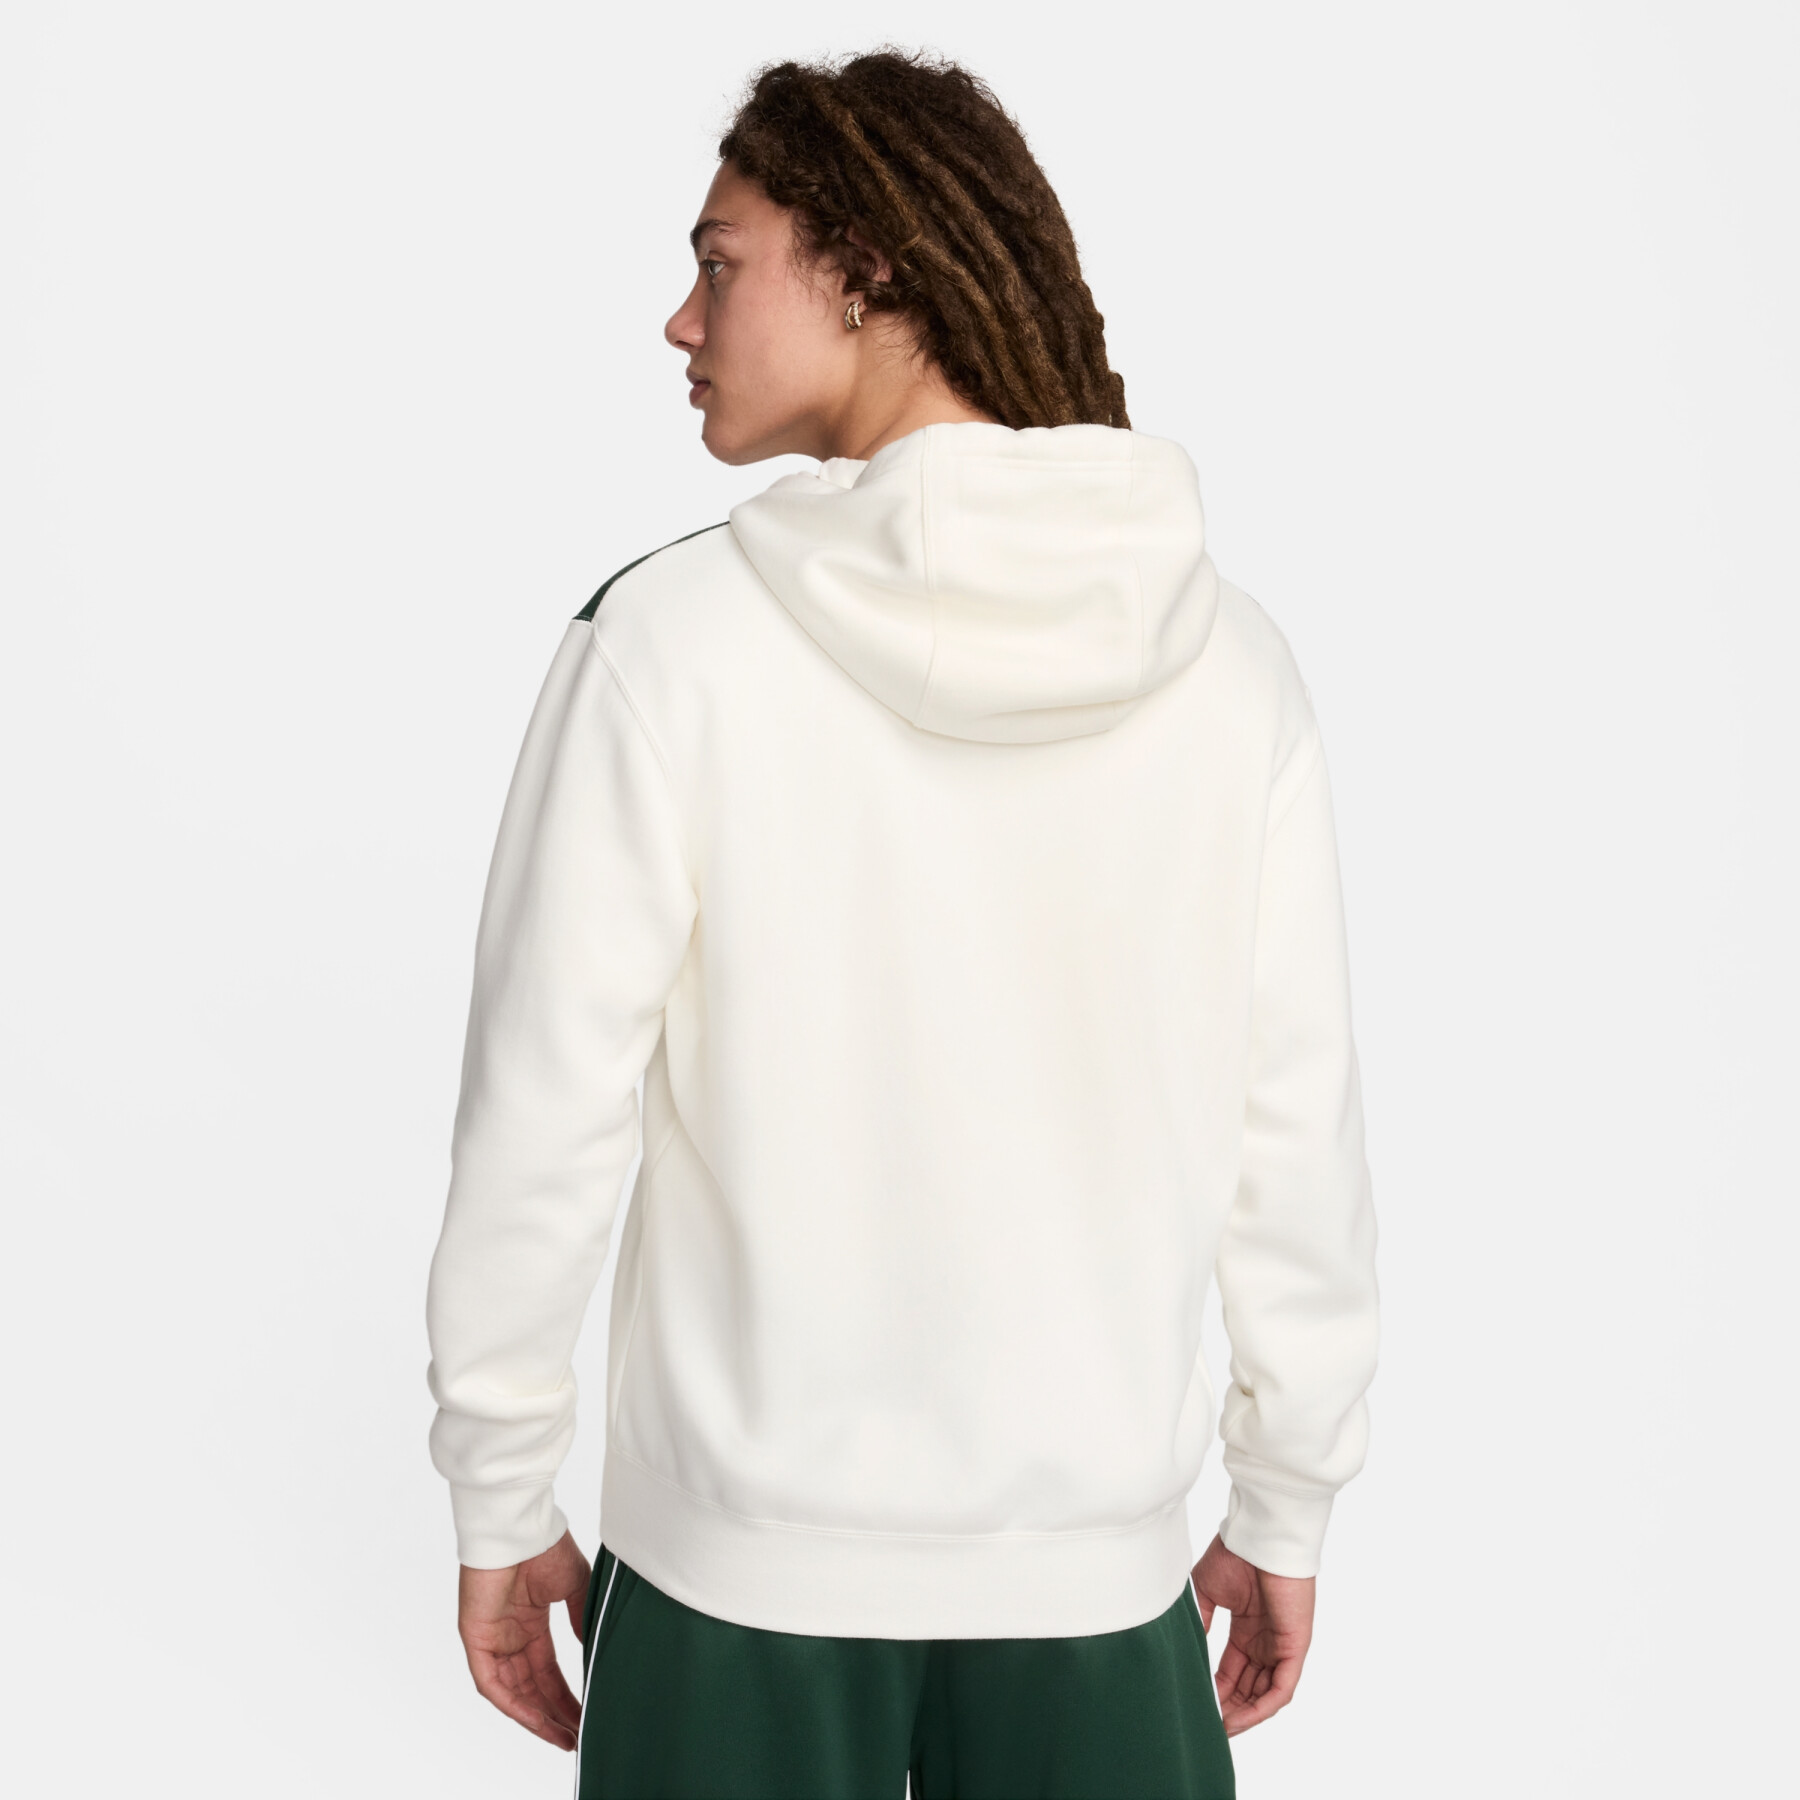 Hooded sweatshirt Nike